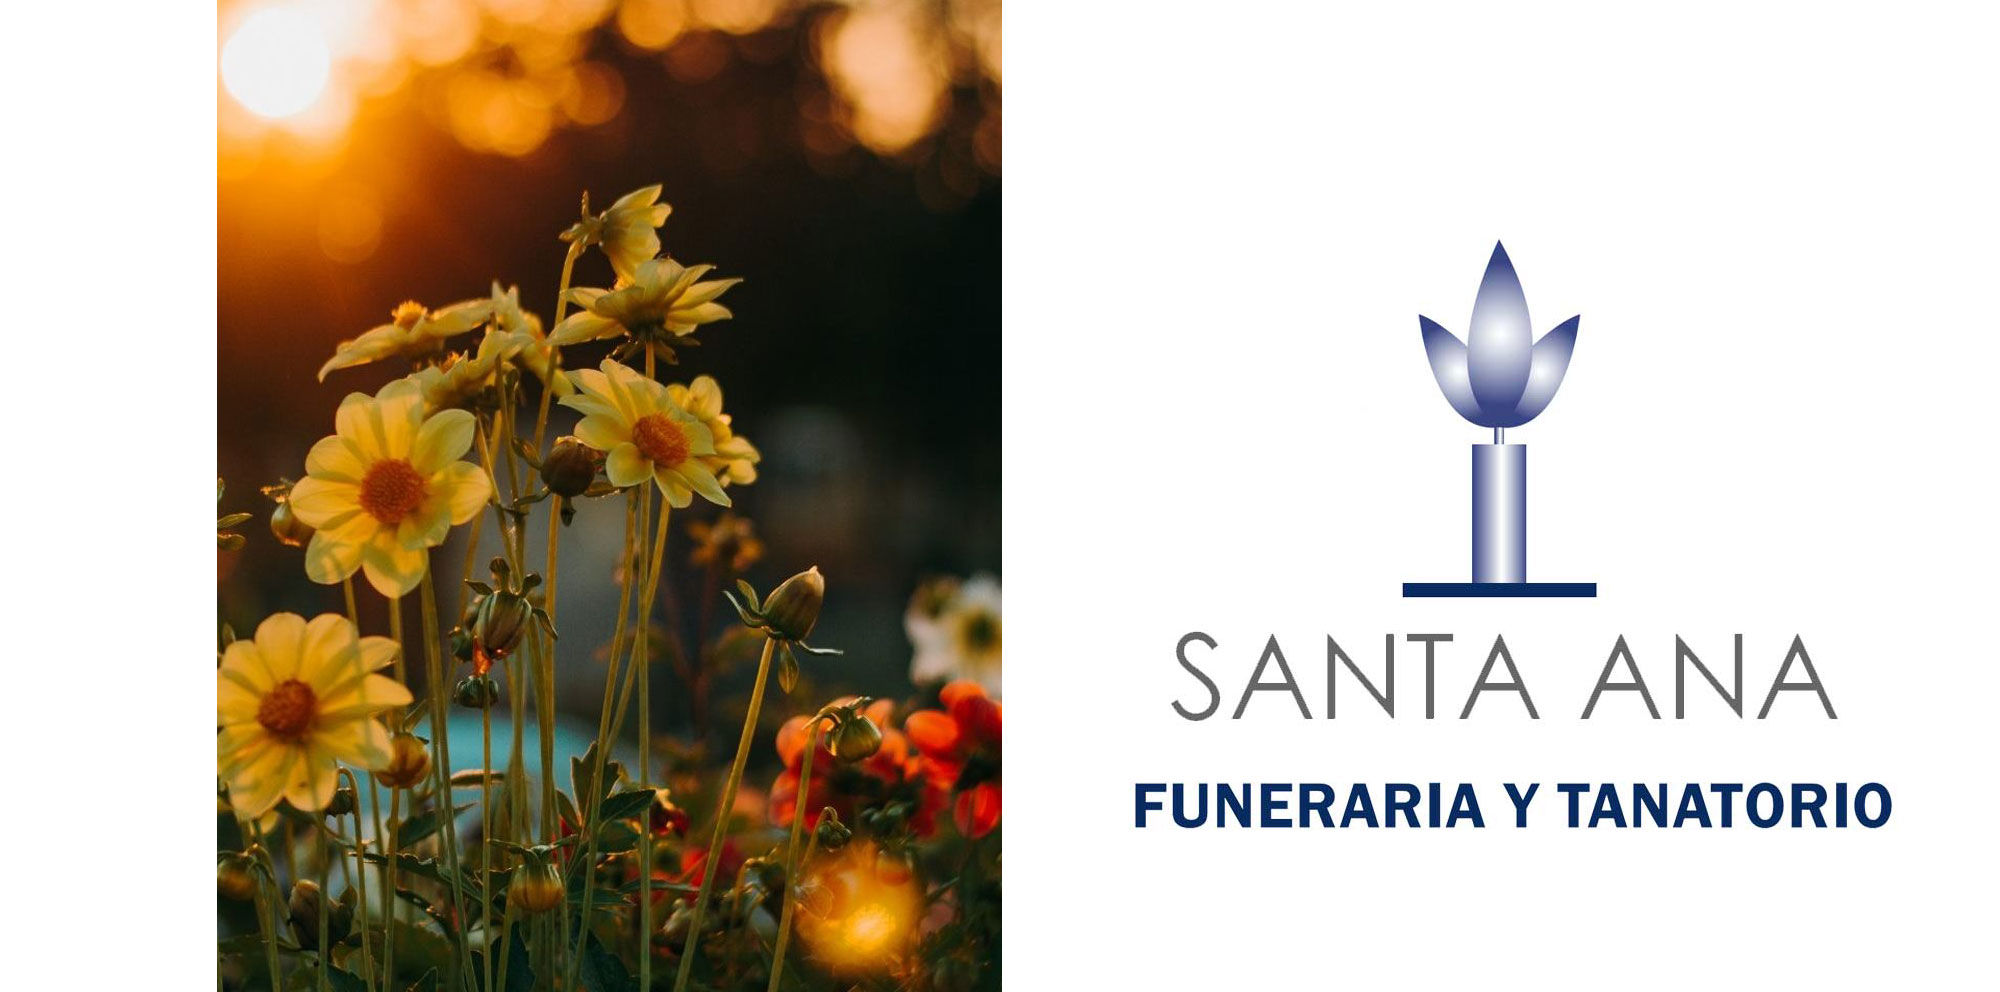 Servicios funerarios y tanatorio en Sahagún, Funeraria Santa Ana